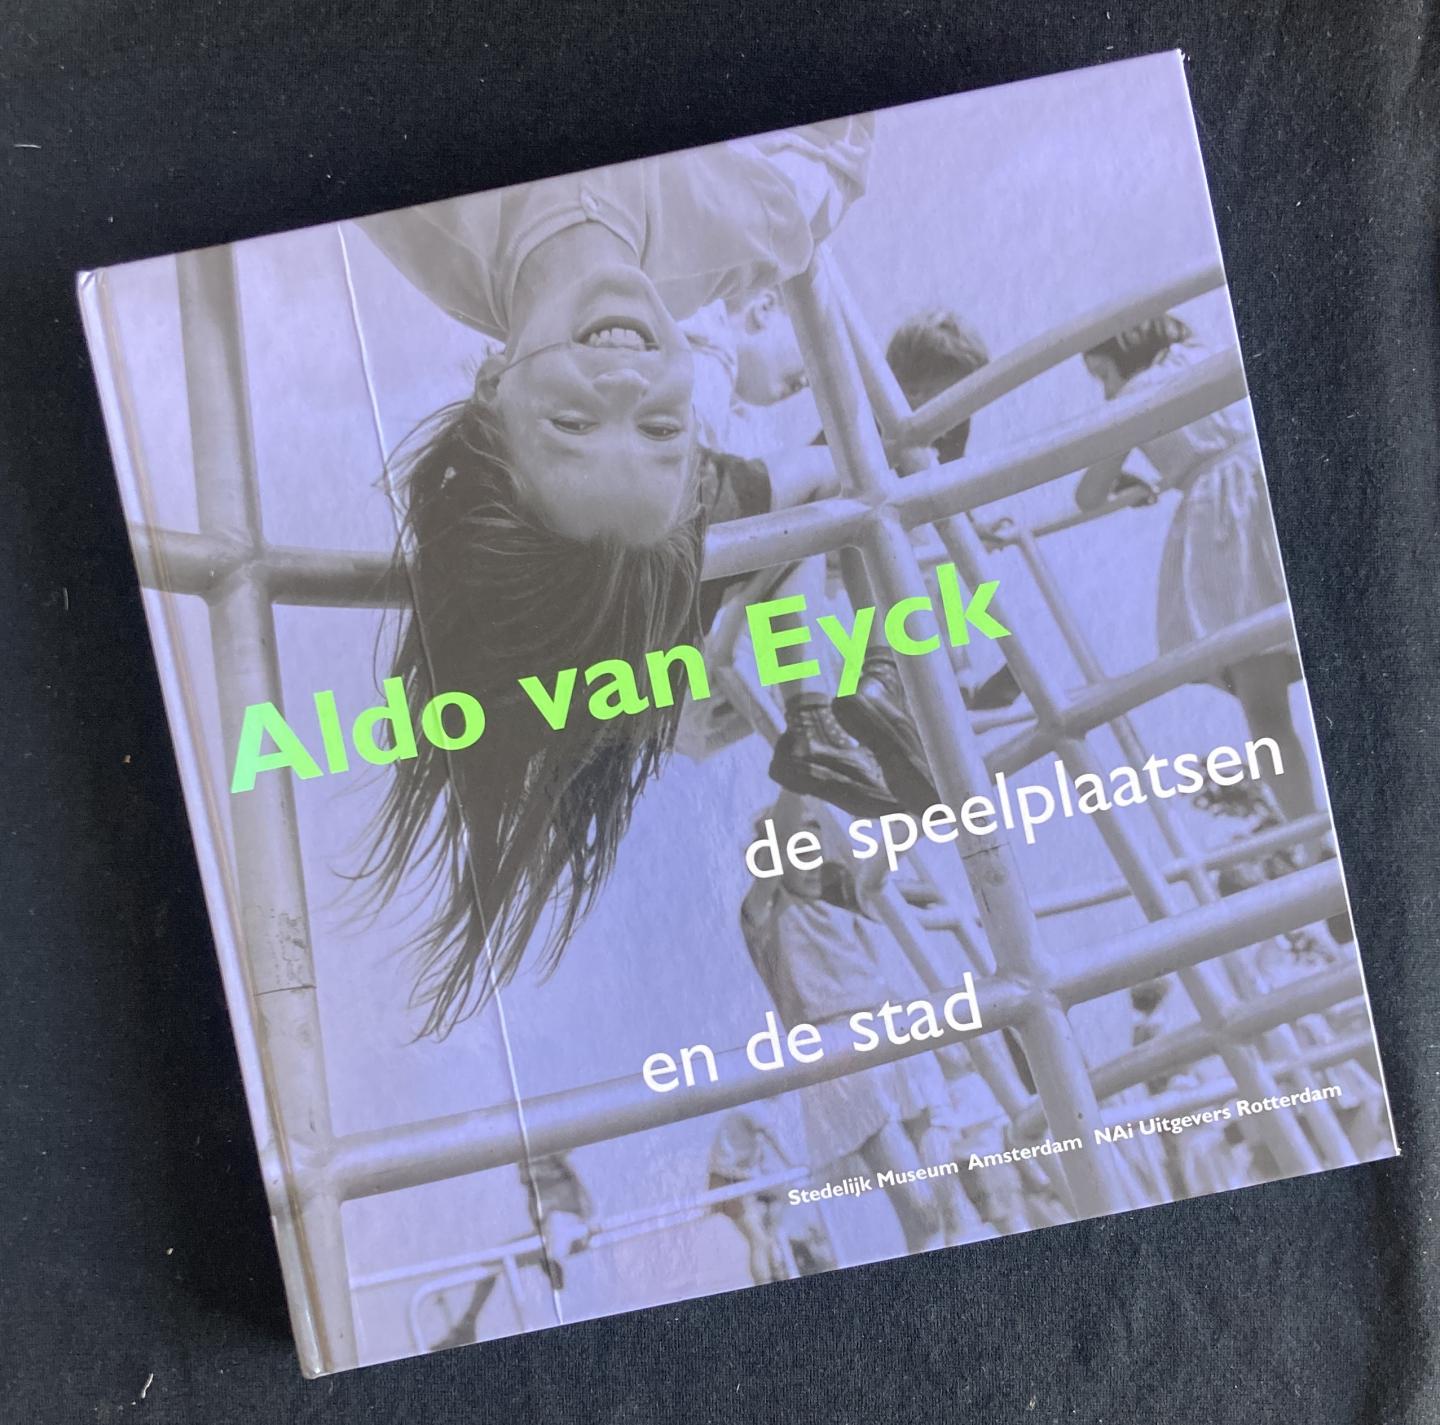 Aldo van Eyck : de speelplaatsen en de stad [Aldo van Eyck The playgrounds and the city] (Dutch edition). - Eyck, Aldo van ; Liane Lefaivre, Rudi Fuchs, Mireille Vroege